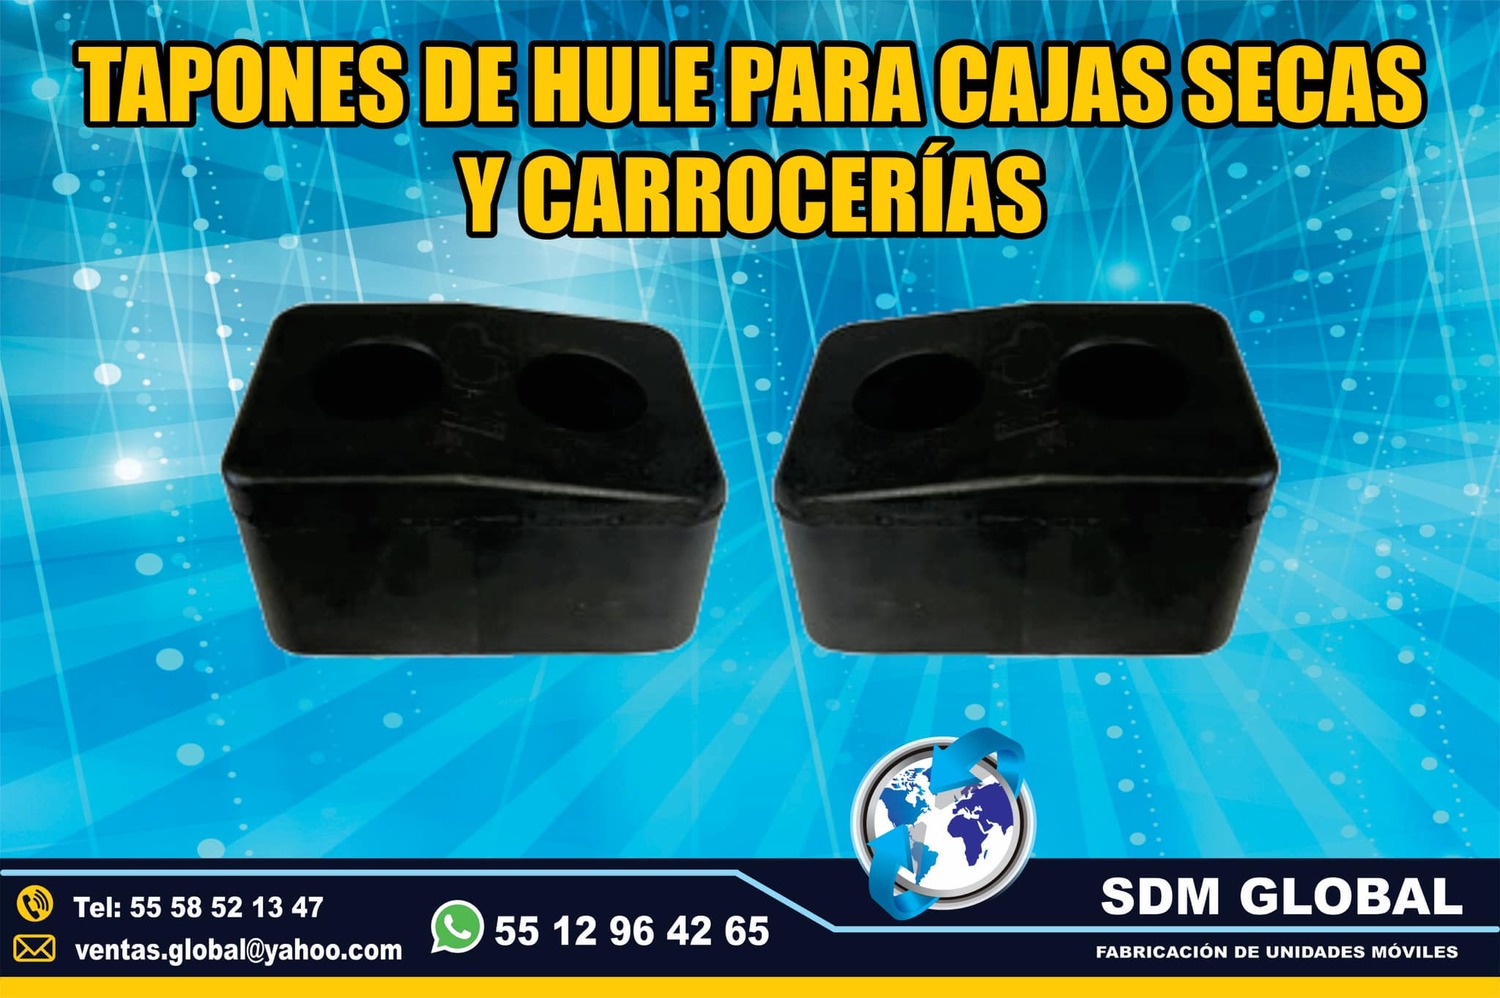 <span style="font-weight: bold;">Venta de Topes para cajas secas carrocerias redilas estaquitas en Sdm global Mexico</span>